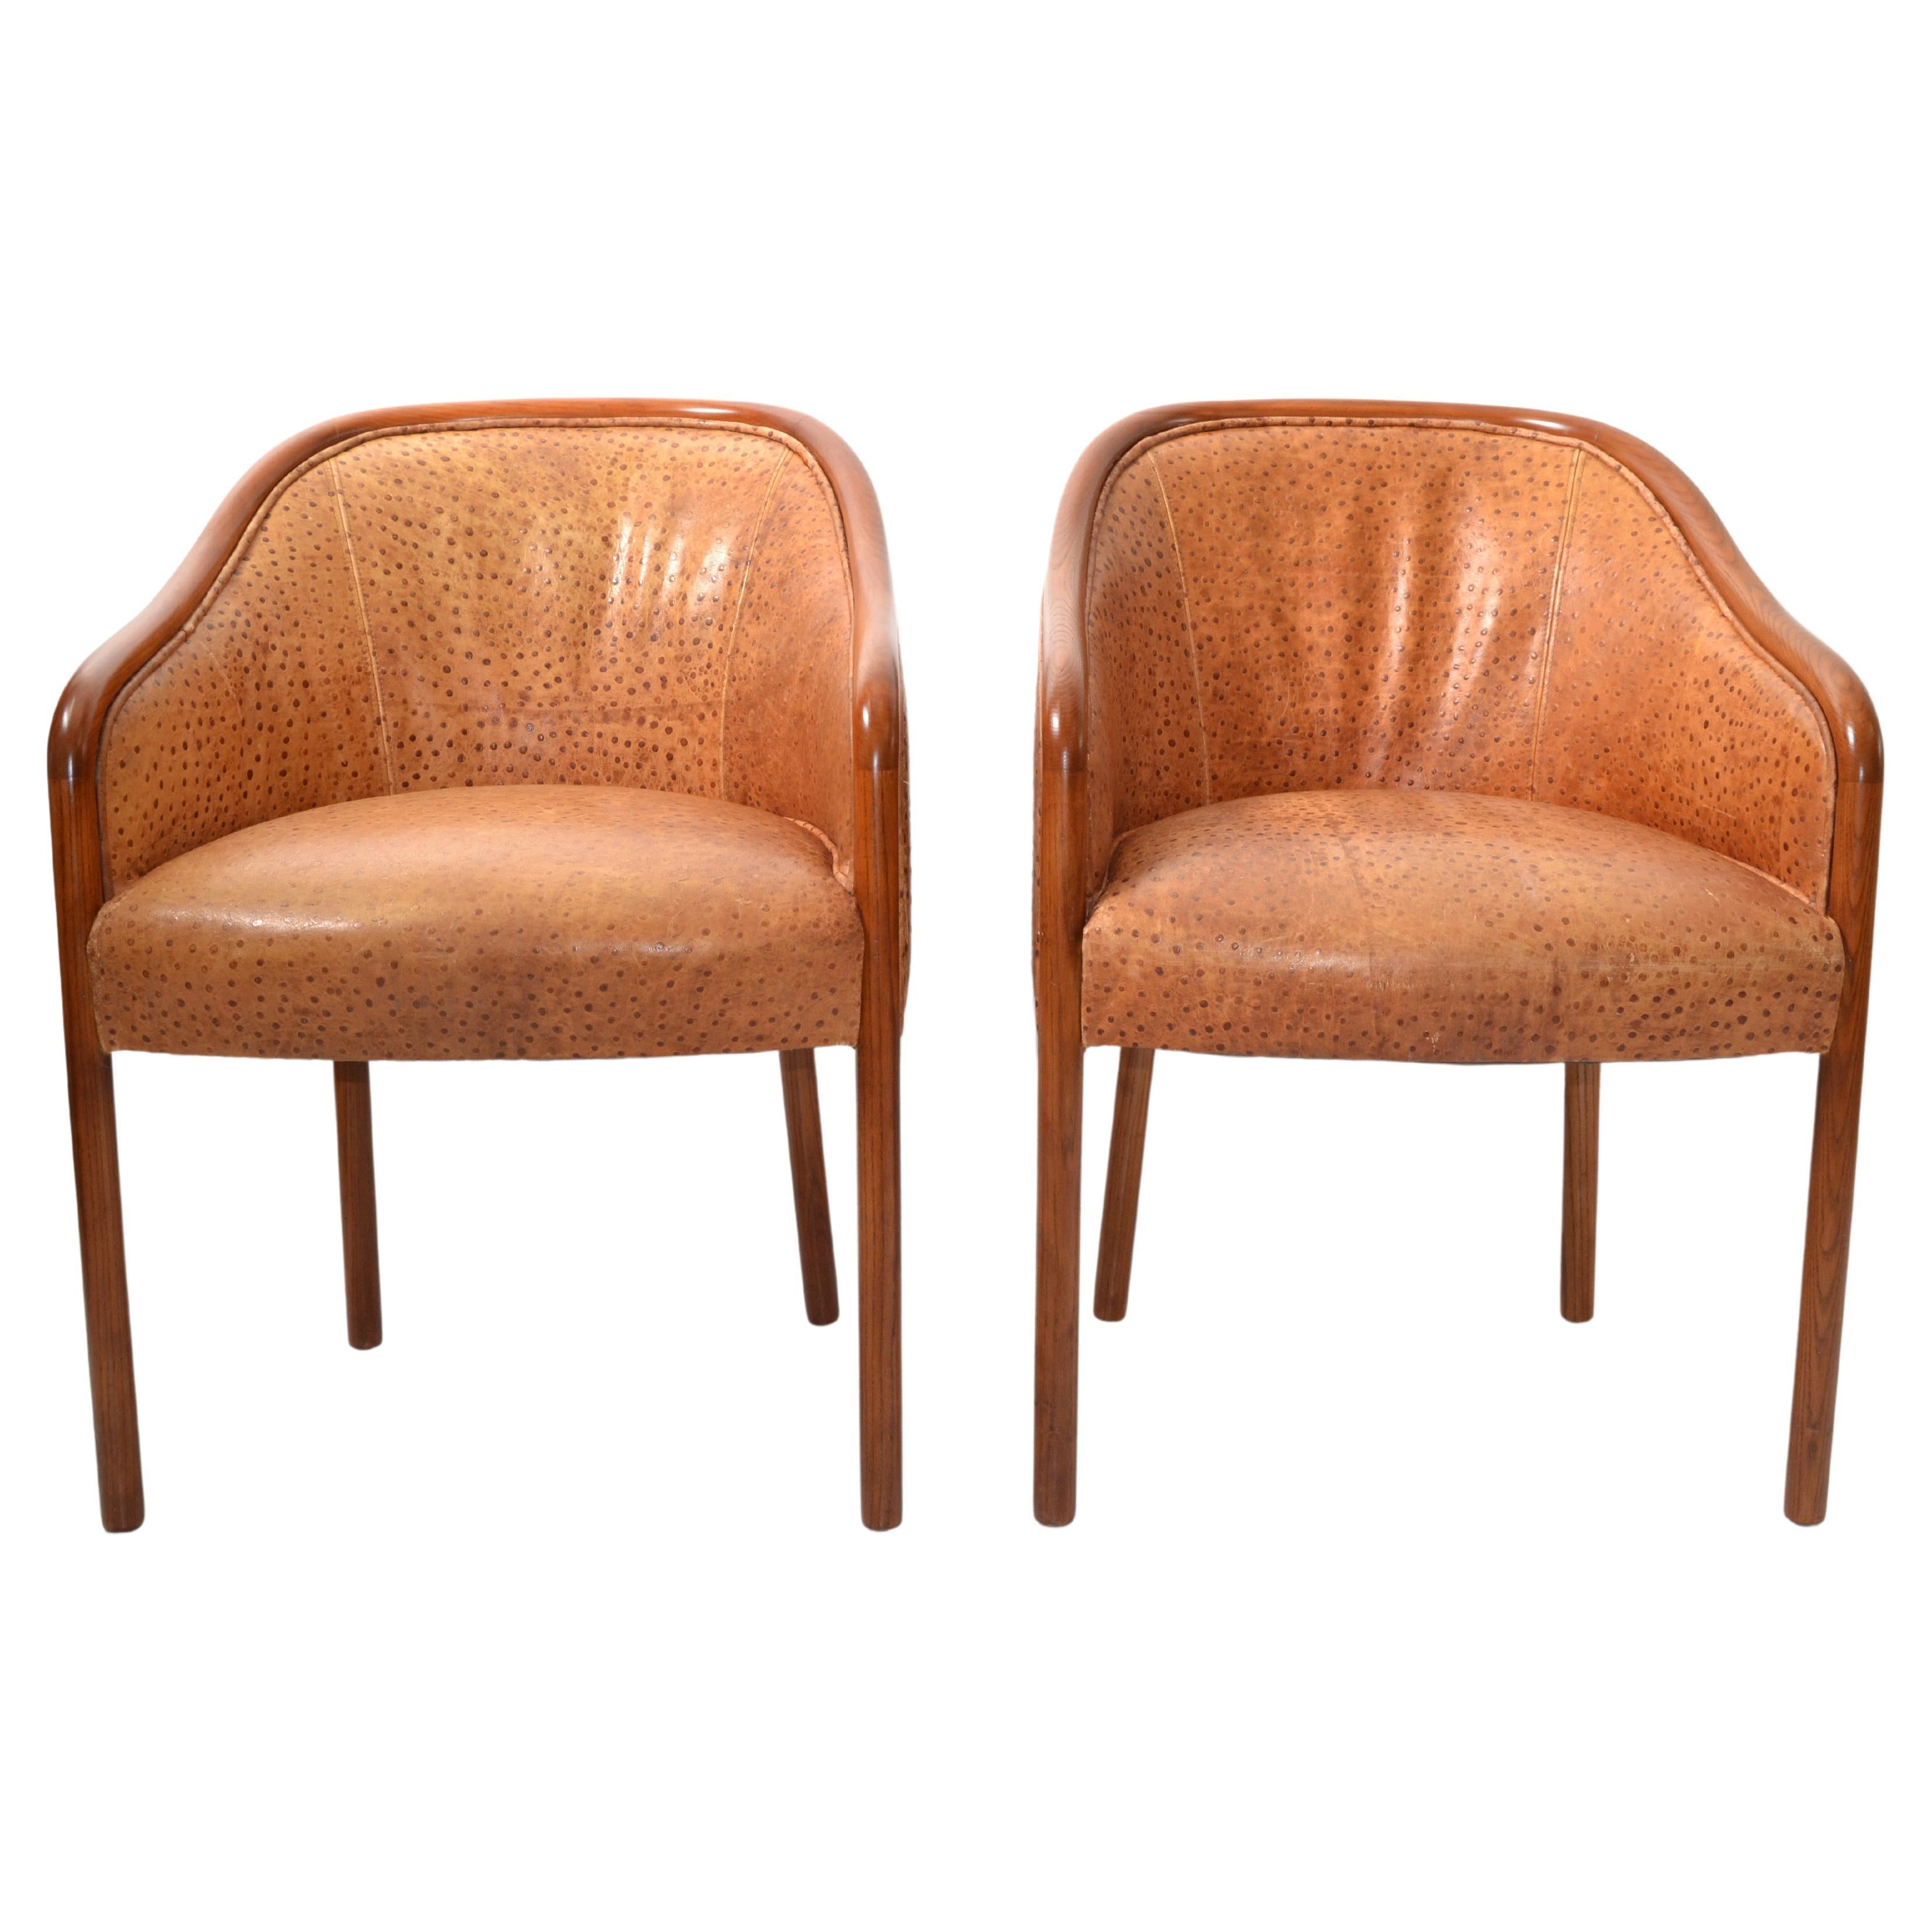 Paire de fauteuils en chêne Ward Bennet, tapissés de cuir d'autruche, style moderne du milieu du siècle dernier